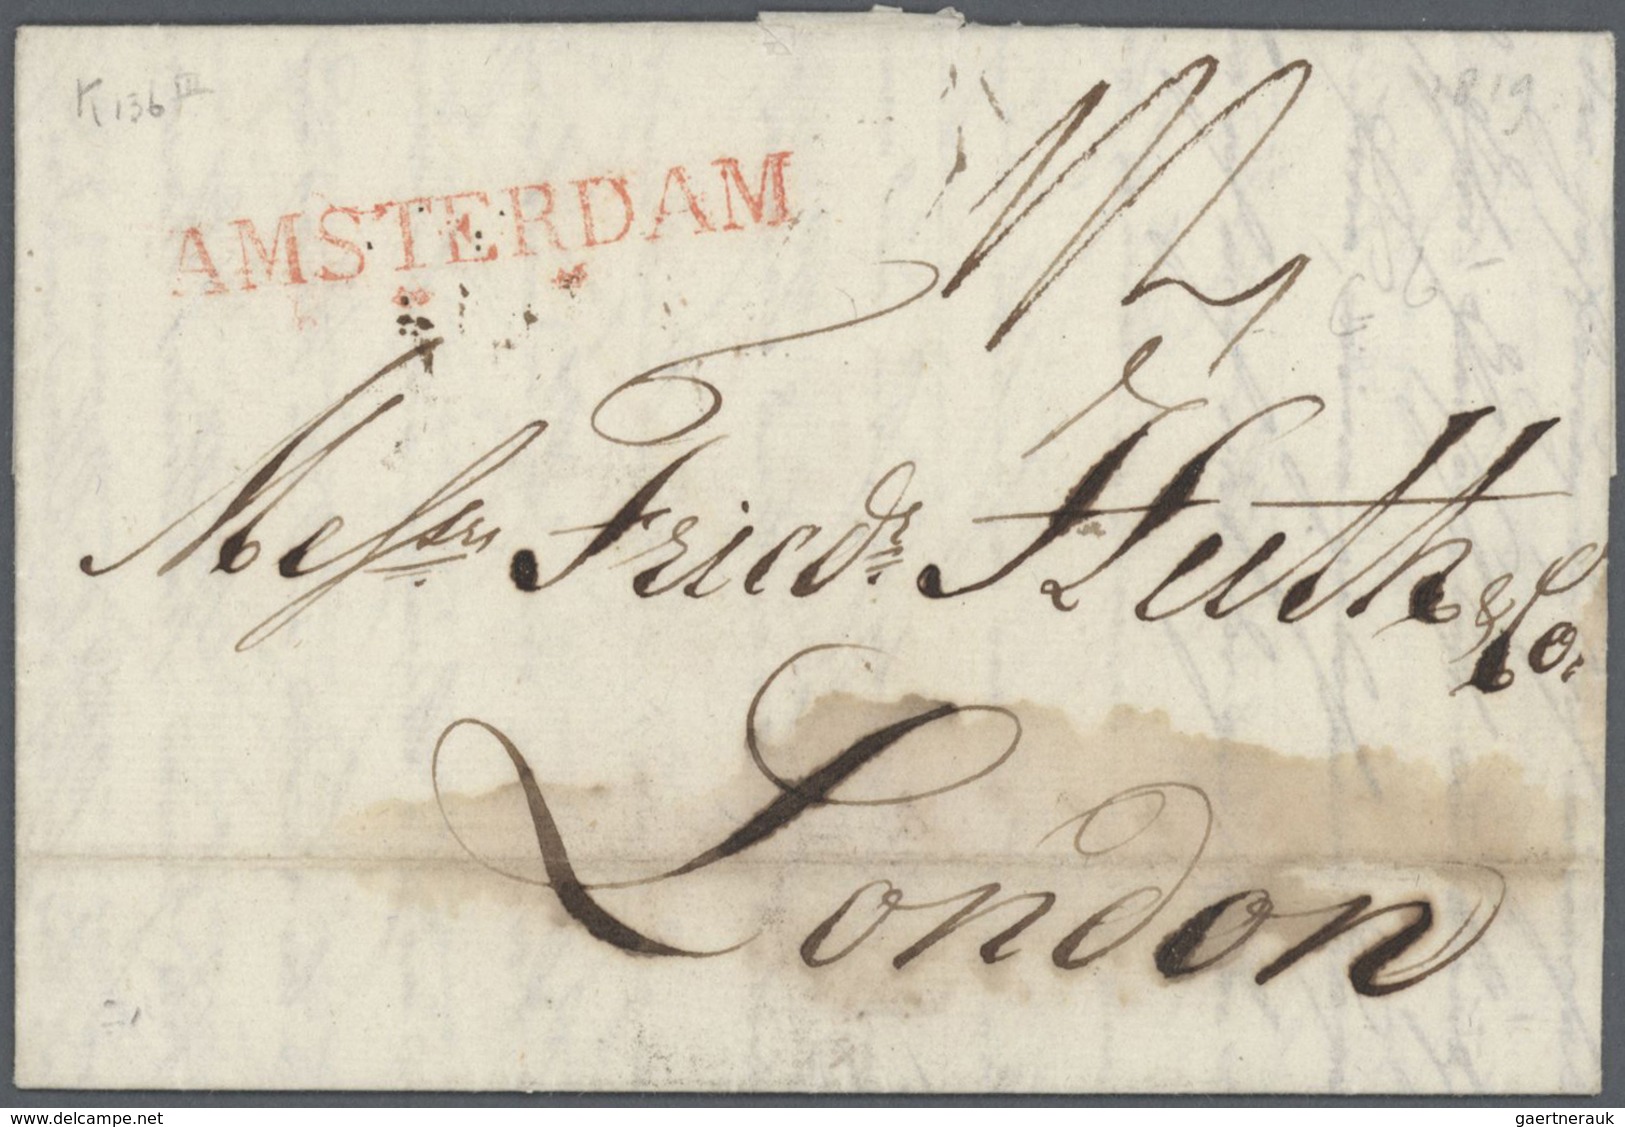 Br Niederlande - Vorphilatelie: 1676- 1865 interessante vorphilatelistische Sammlung von 80 meist gut e